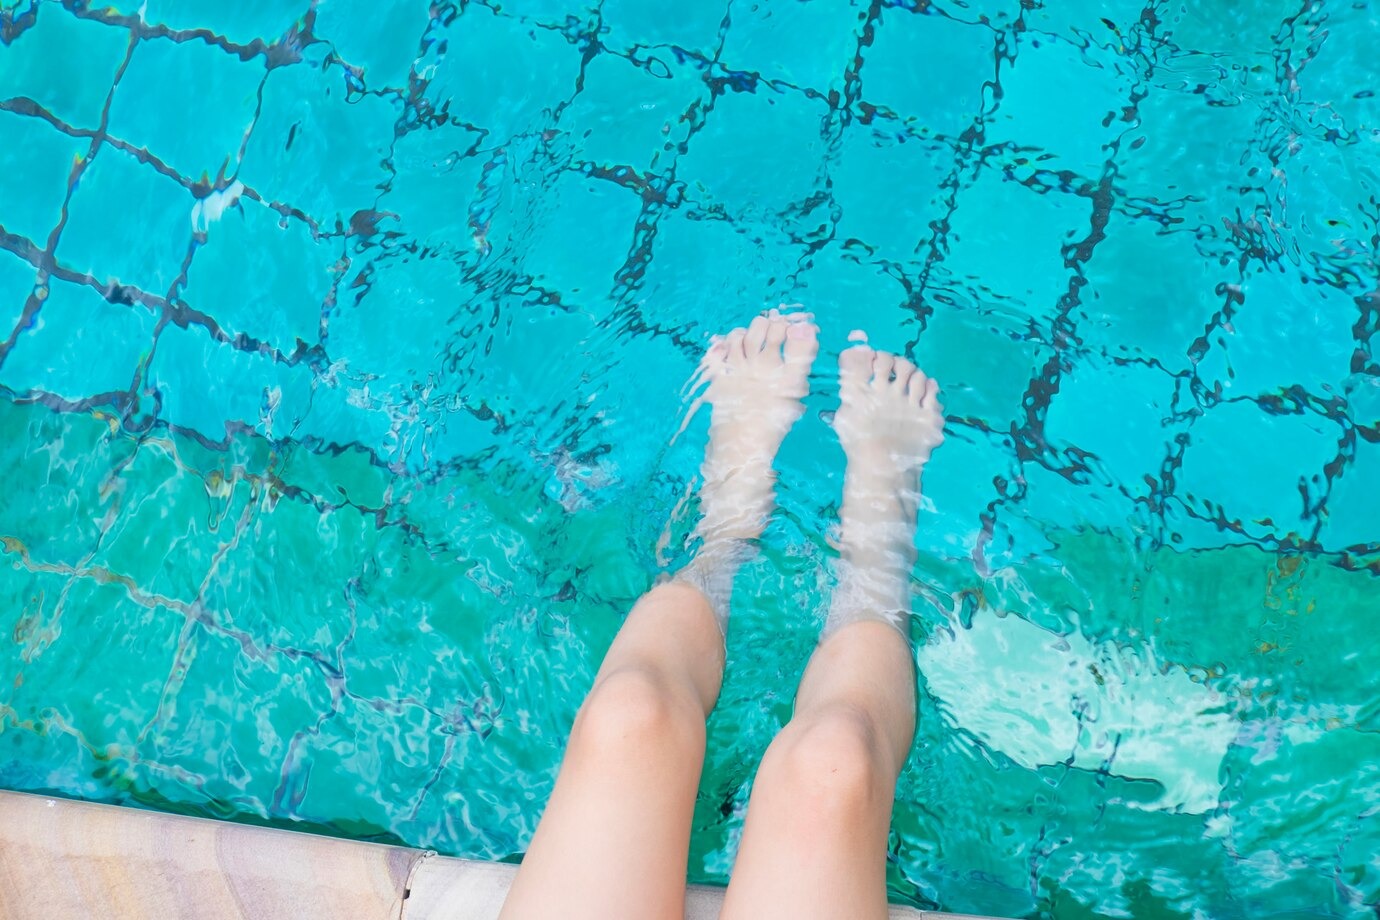 Дерматолог Зубрицки: При посещении бассейна защититься от грибка поможет обувь